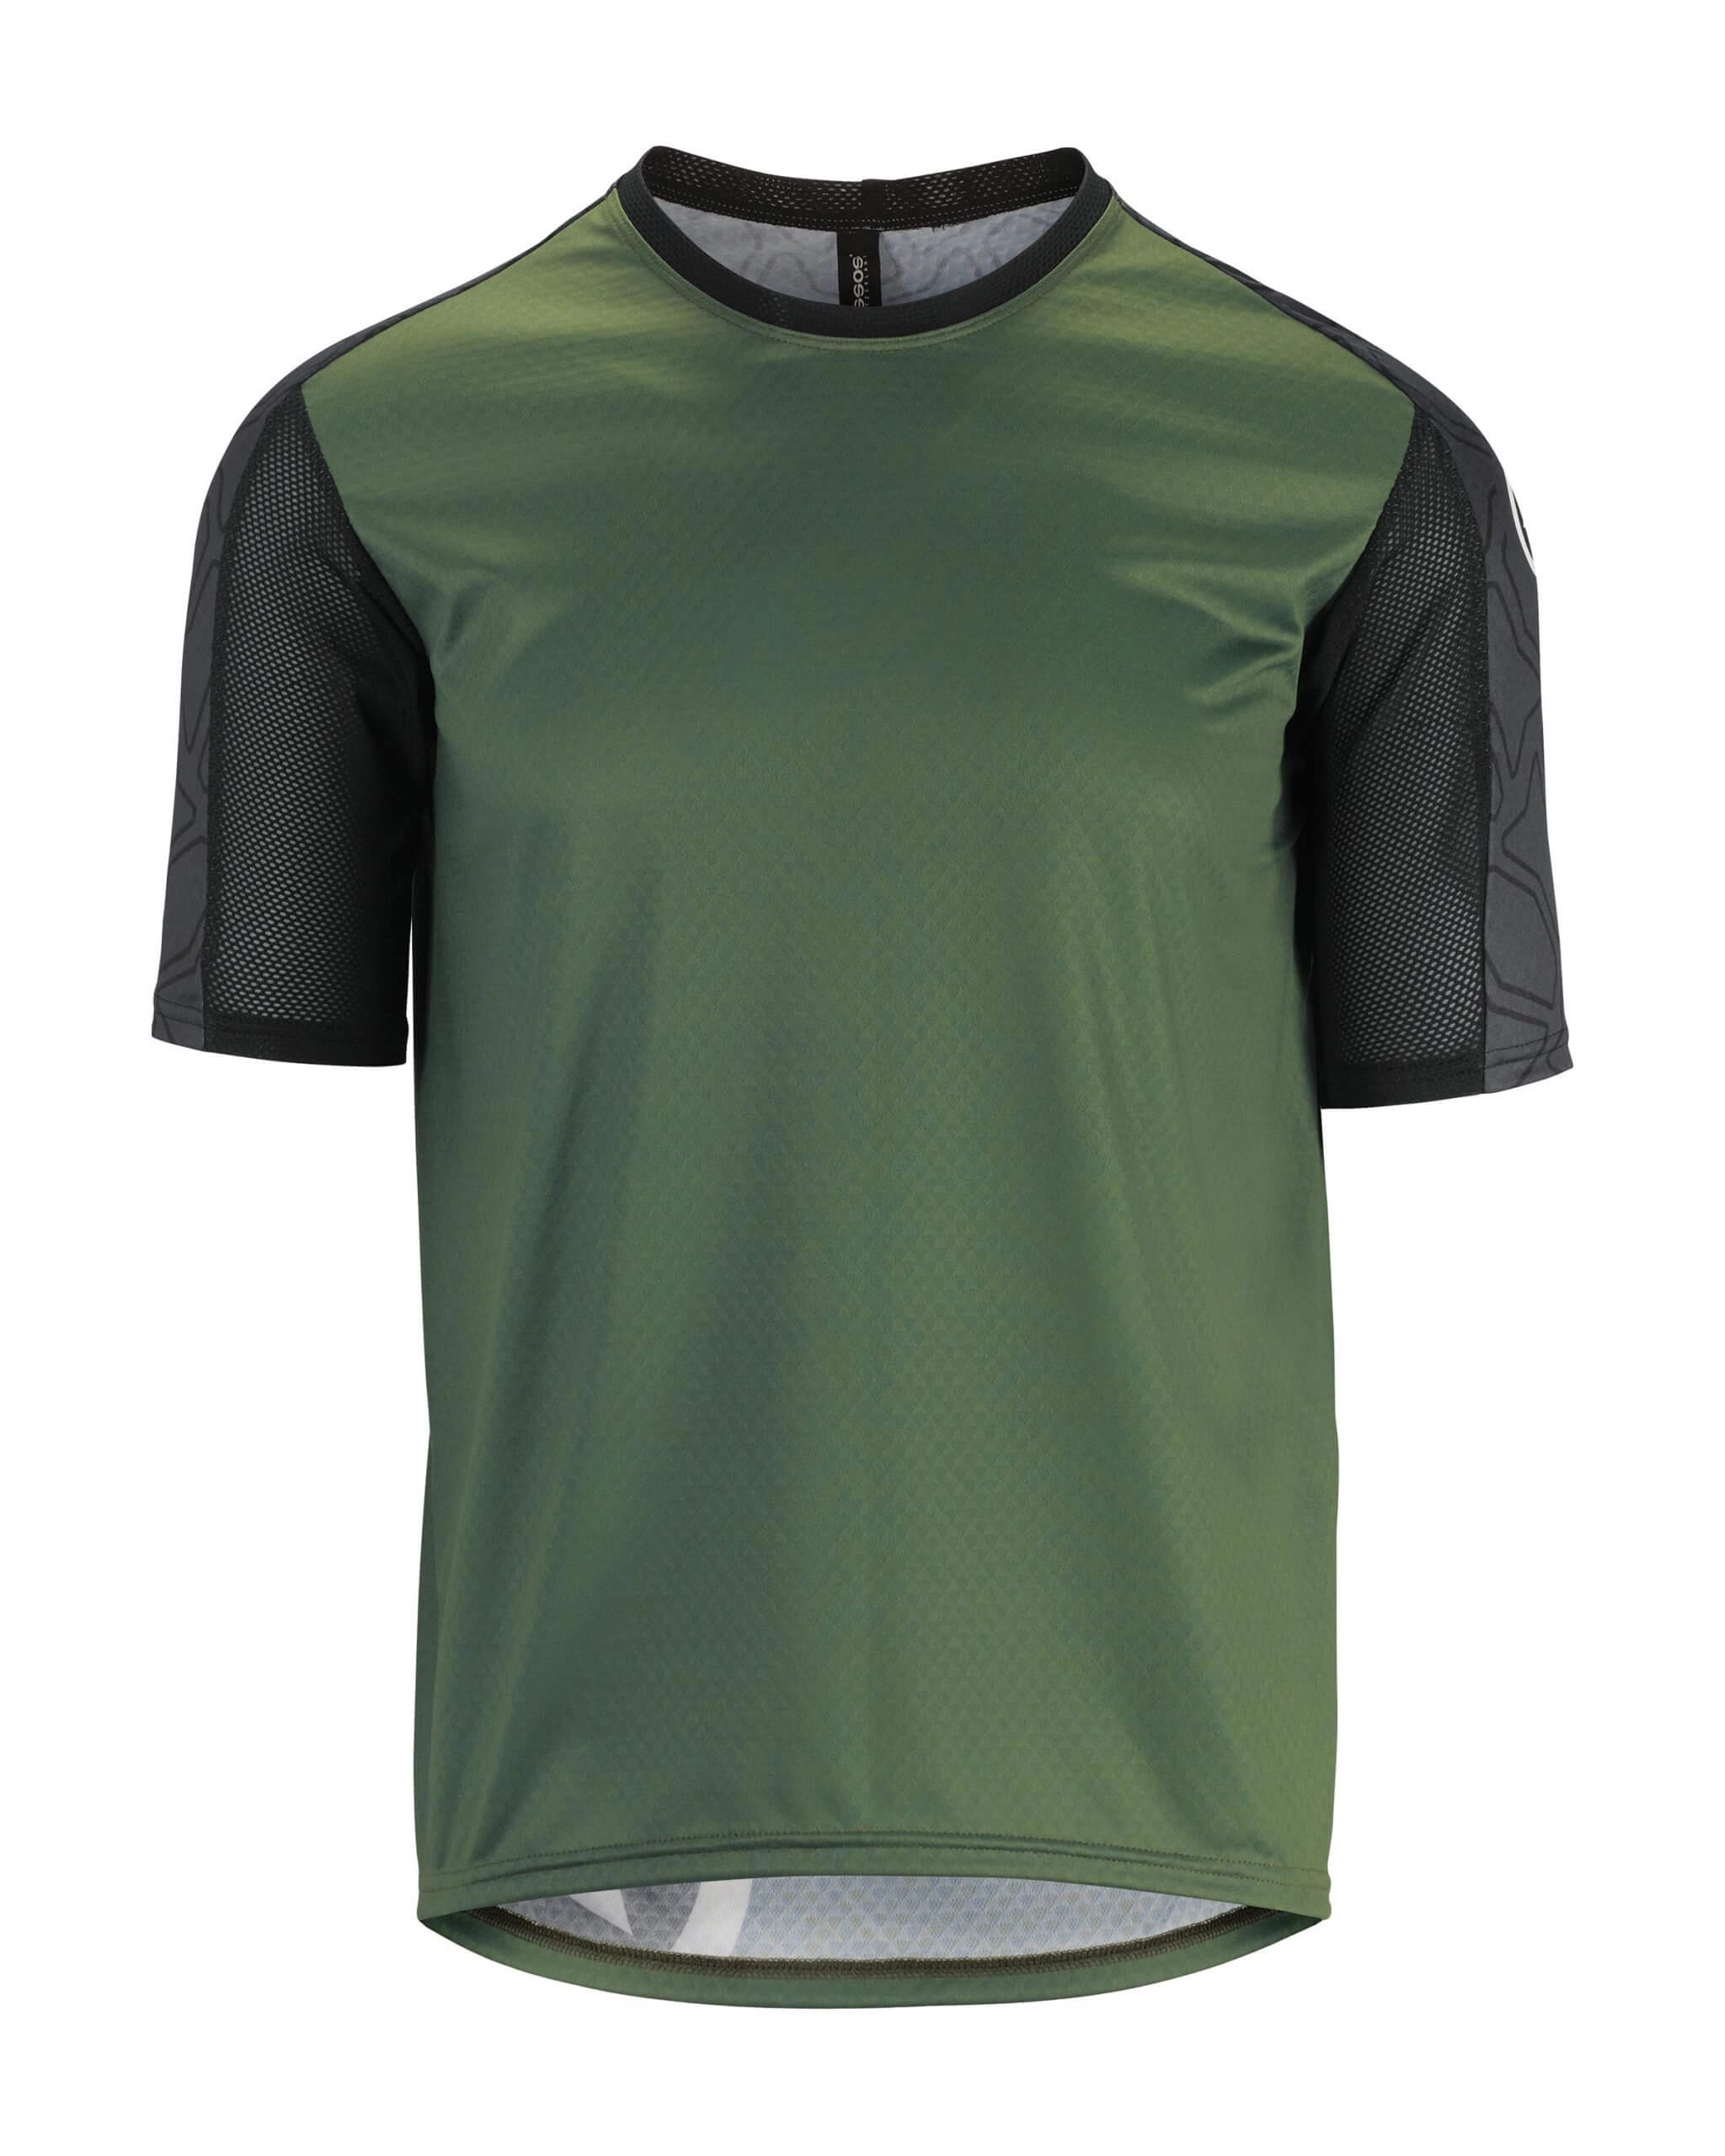 Джерси ASSOS Trail SS, кор. рукав, мужское, зеленое с черным, XL фото 